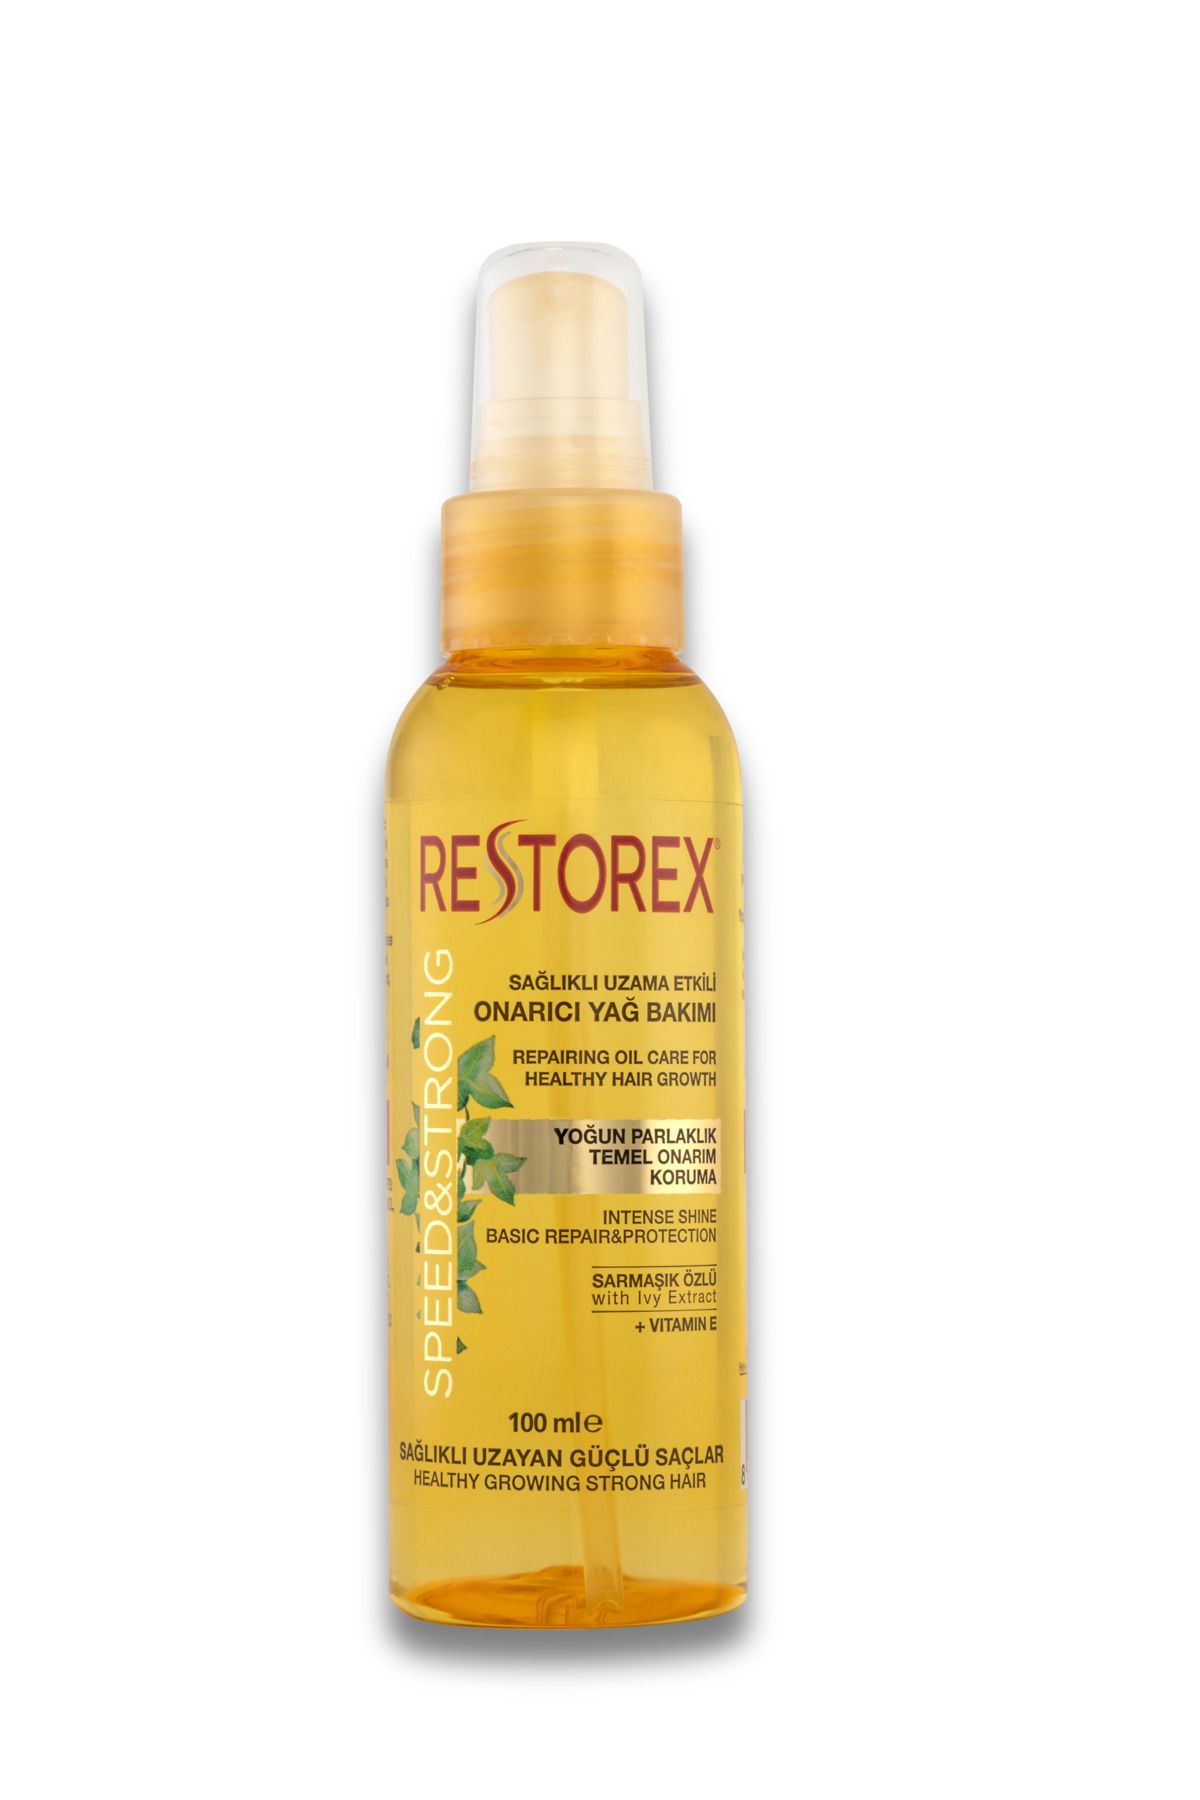 Restorex Sağlıklı Uzama Etkili Onarıcı Bakım Saç Bakım Yağı 100 Ml